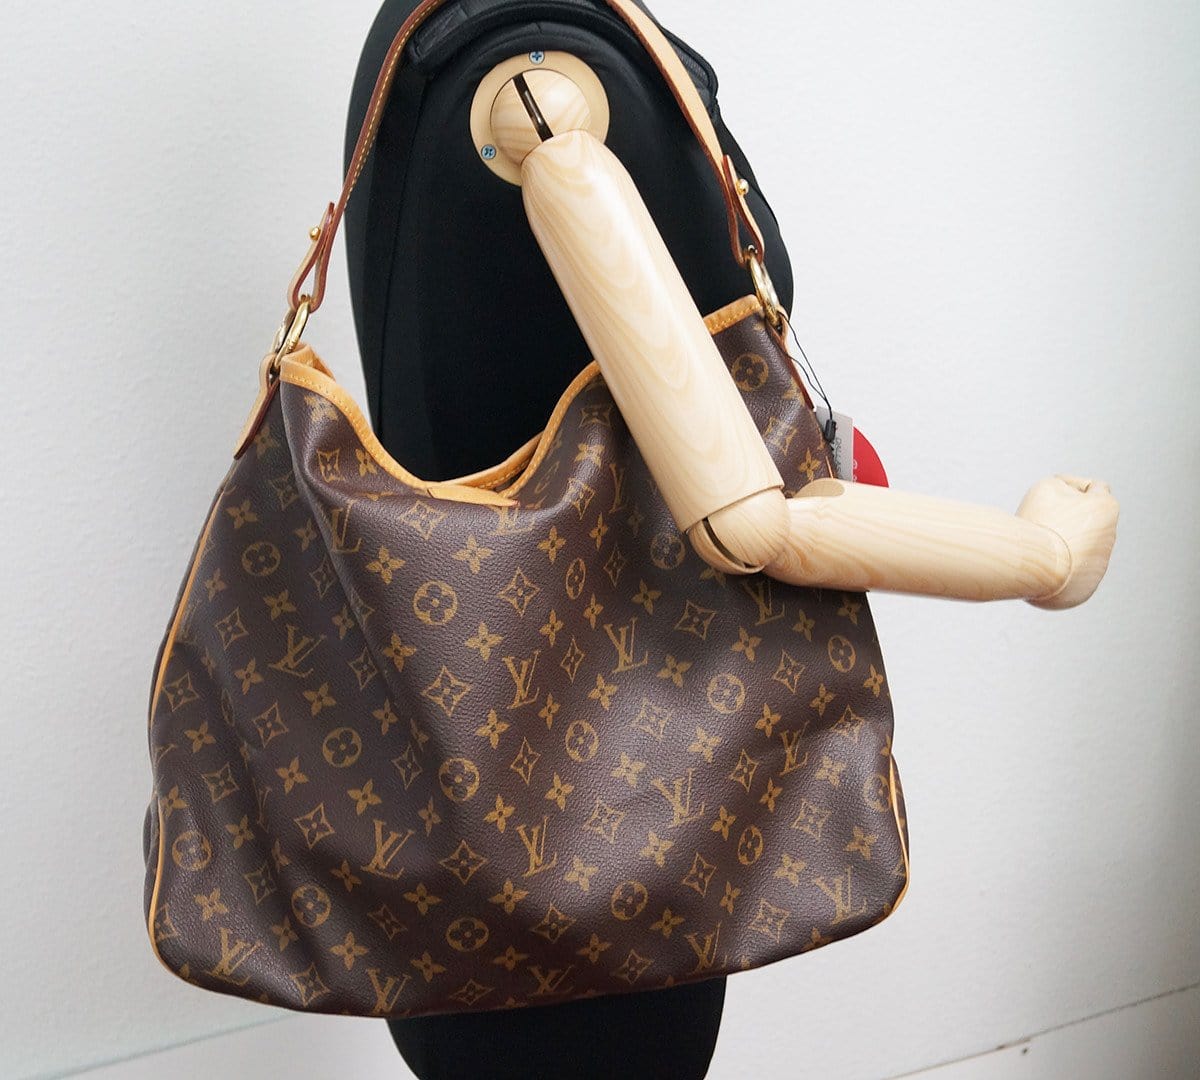 Louis Vuitton Delightful MM monogram shoulder bag. Excellent pre